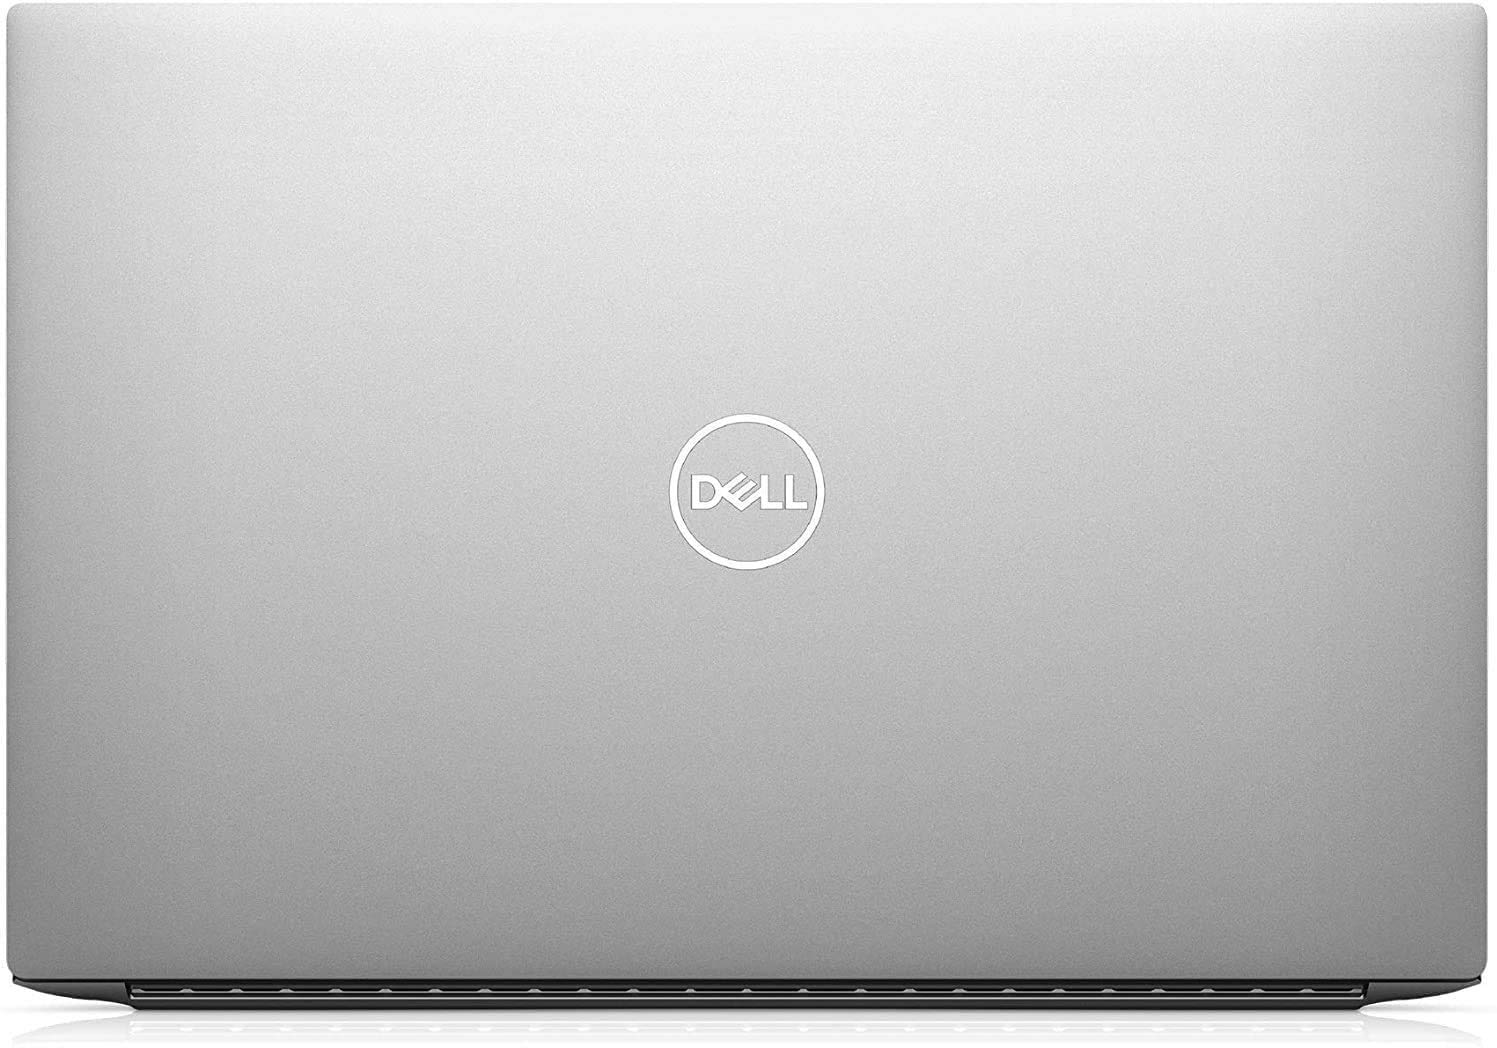 Dell XPS 15 9500 (Latest Model) 15.6-inch Laptop Intel Core i9-10885H (8-CORE) 10th Gen 32GB DDR4 RAM 1TB SSD, FHD+ (1920x1200) 500-NIT NVIDIA Geforce GTX 1650 Ti 4GB GDDR6, Windows 10 (Renewed)